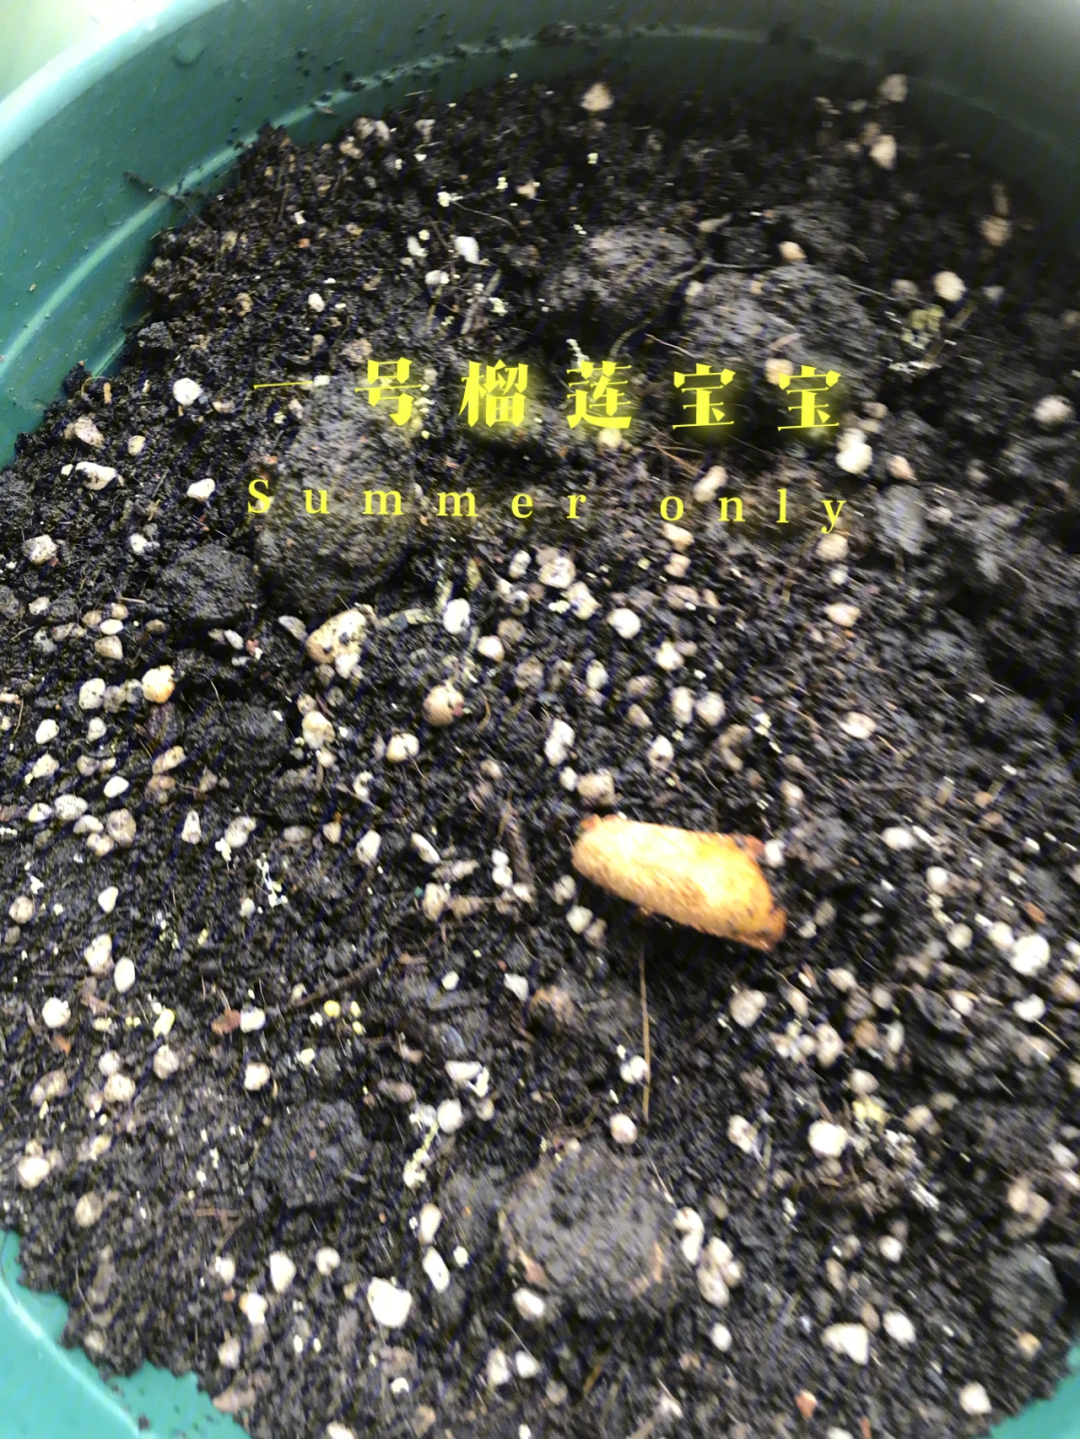 个蛮老的榴莲,吃完顺手放一次性杯子泡了一天水,第二天惊奇发现发芽了